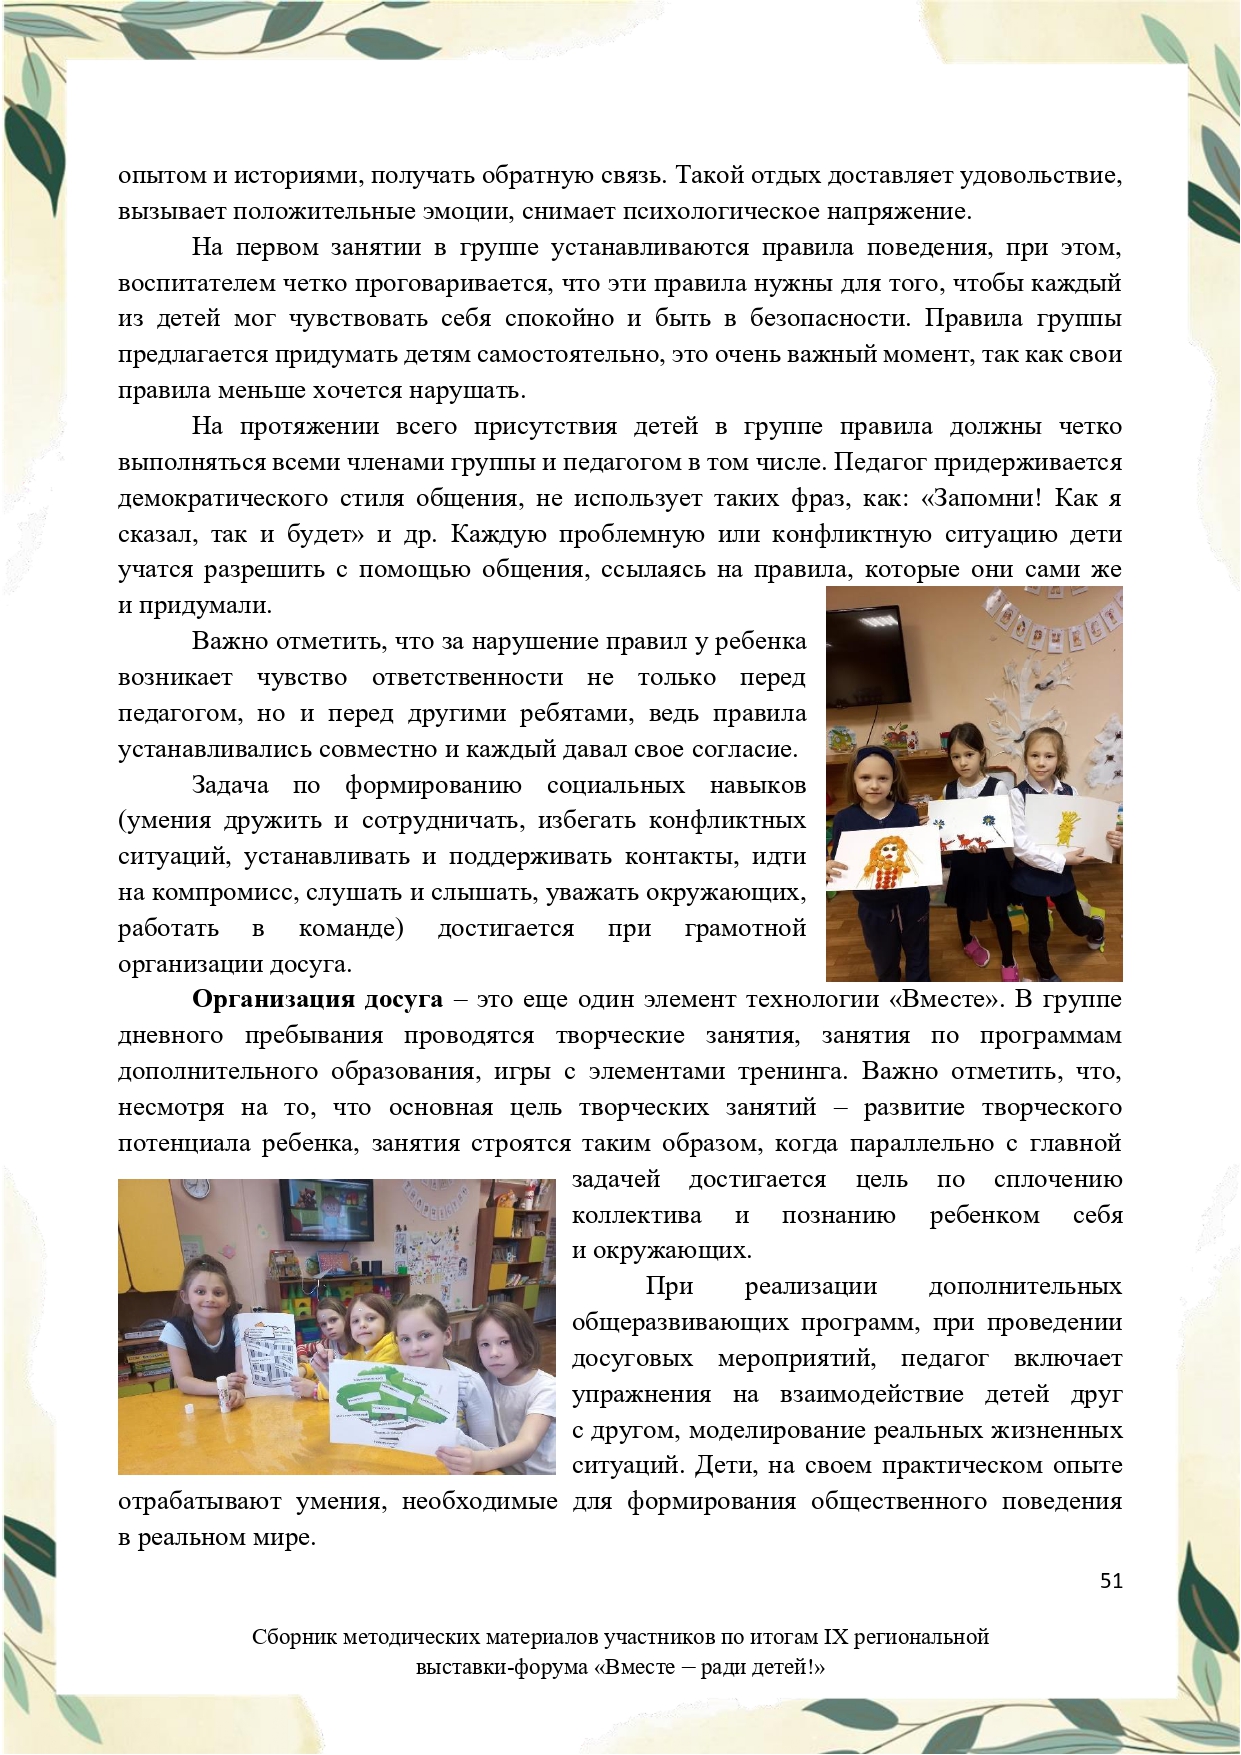 Sbornik_metodicheskikh_materialov_uchastnikov_IX_regionalnoy_vystavki-foruma_Vmeste__radi_detey_33__2023_page-0051